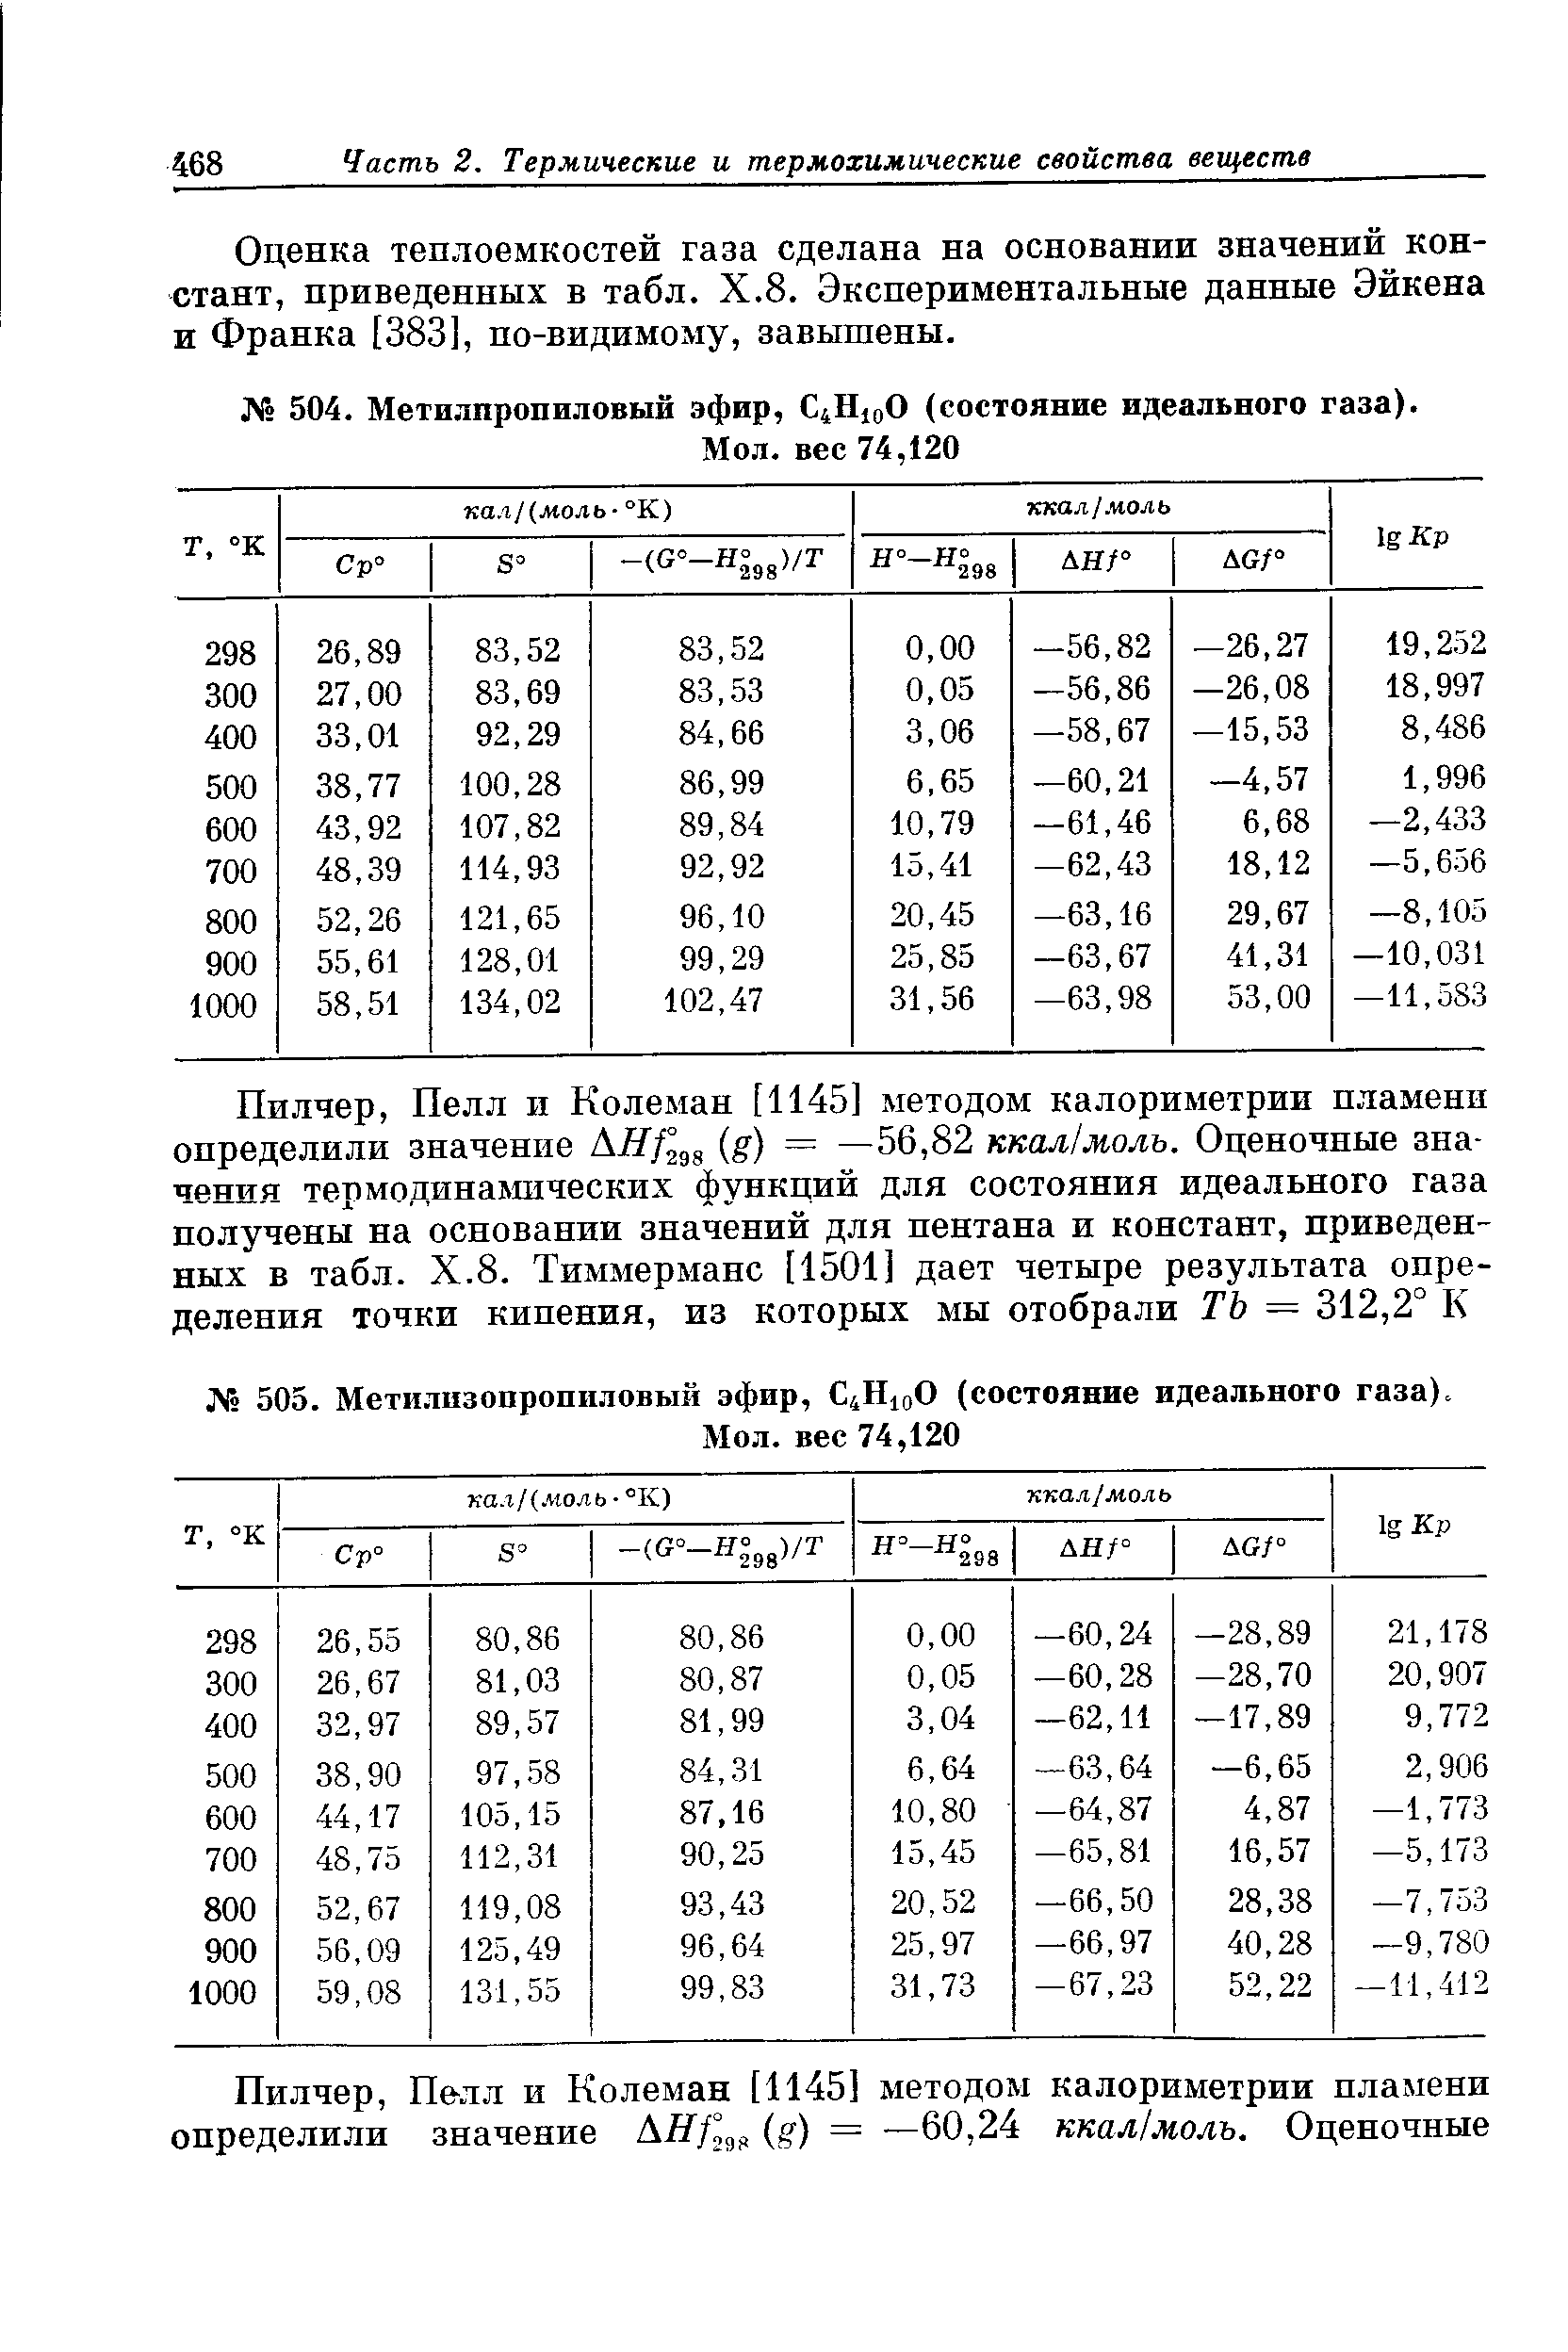 Оценка теплоемкостей газа сделана на основании значений констант, приведенных в табл. Х.8. Экспериментальные данные Эйкена и Франка [383], по-видимому, завышены.